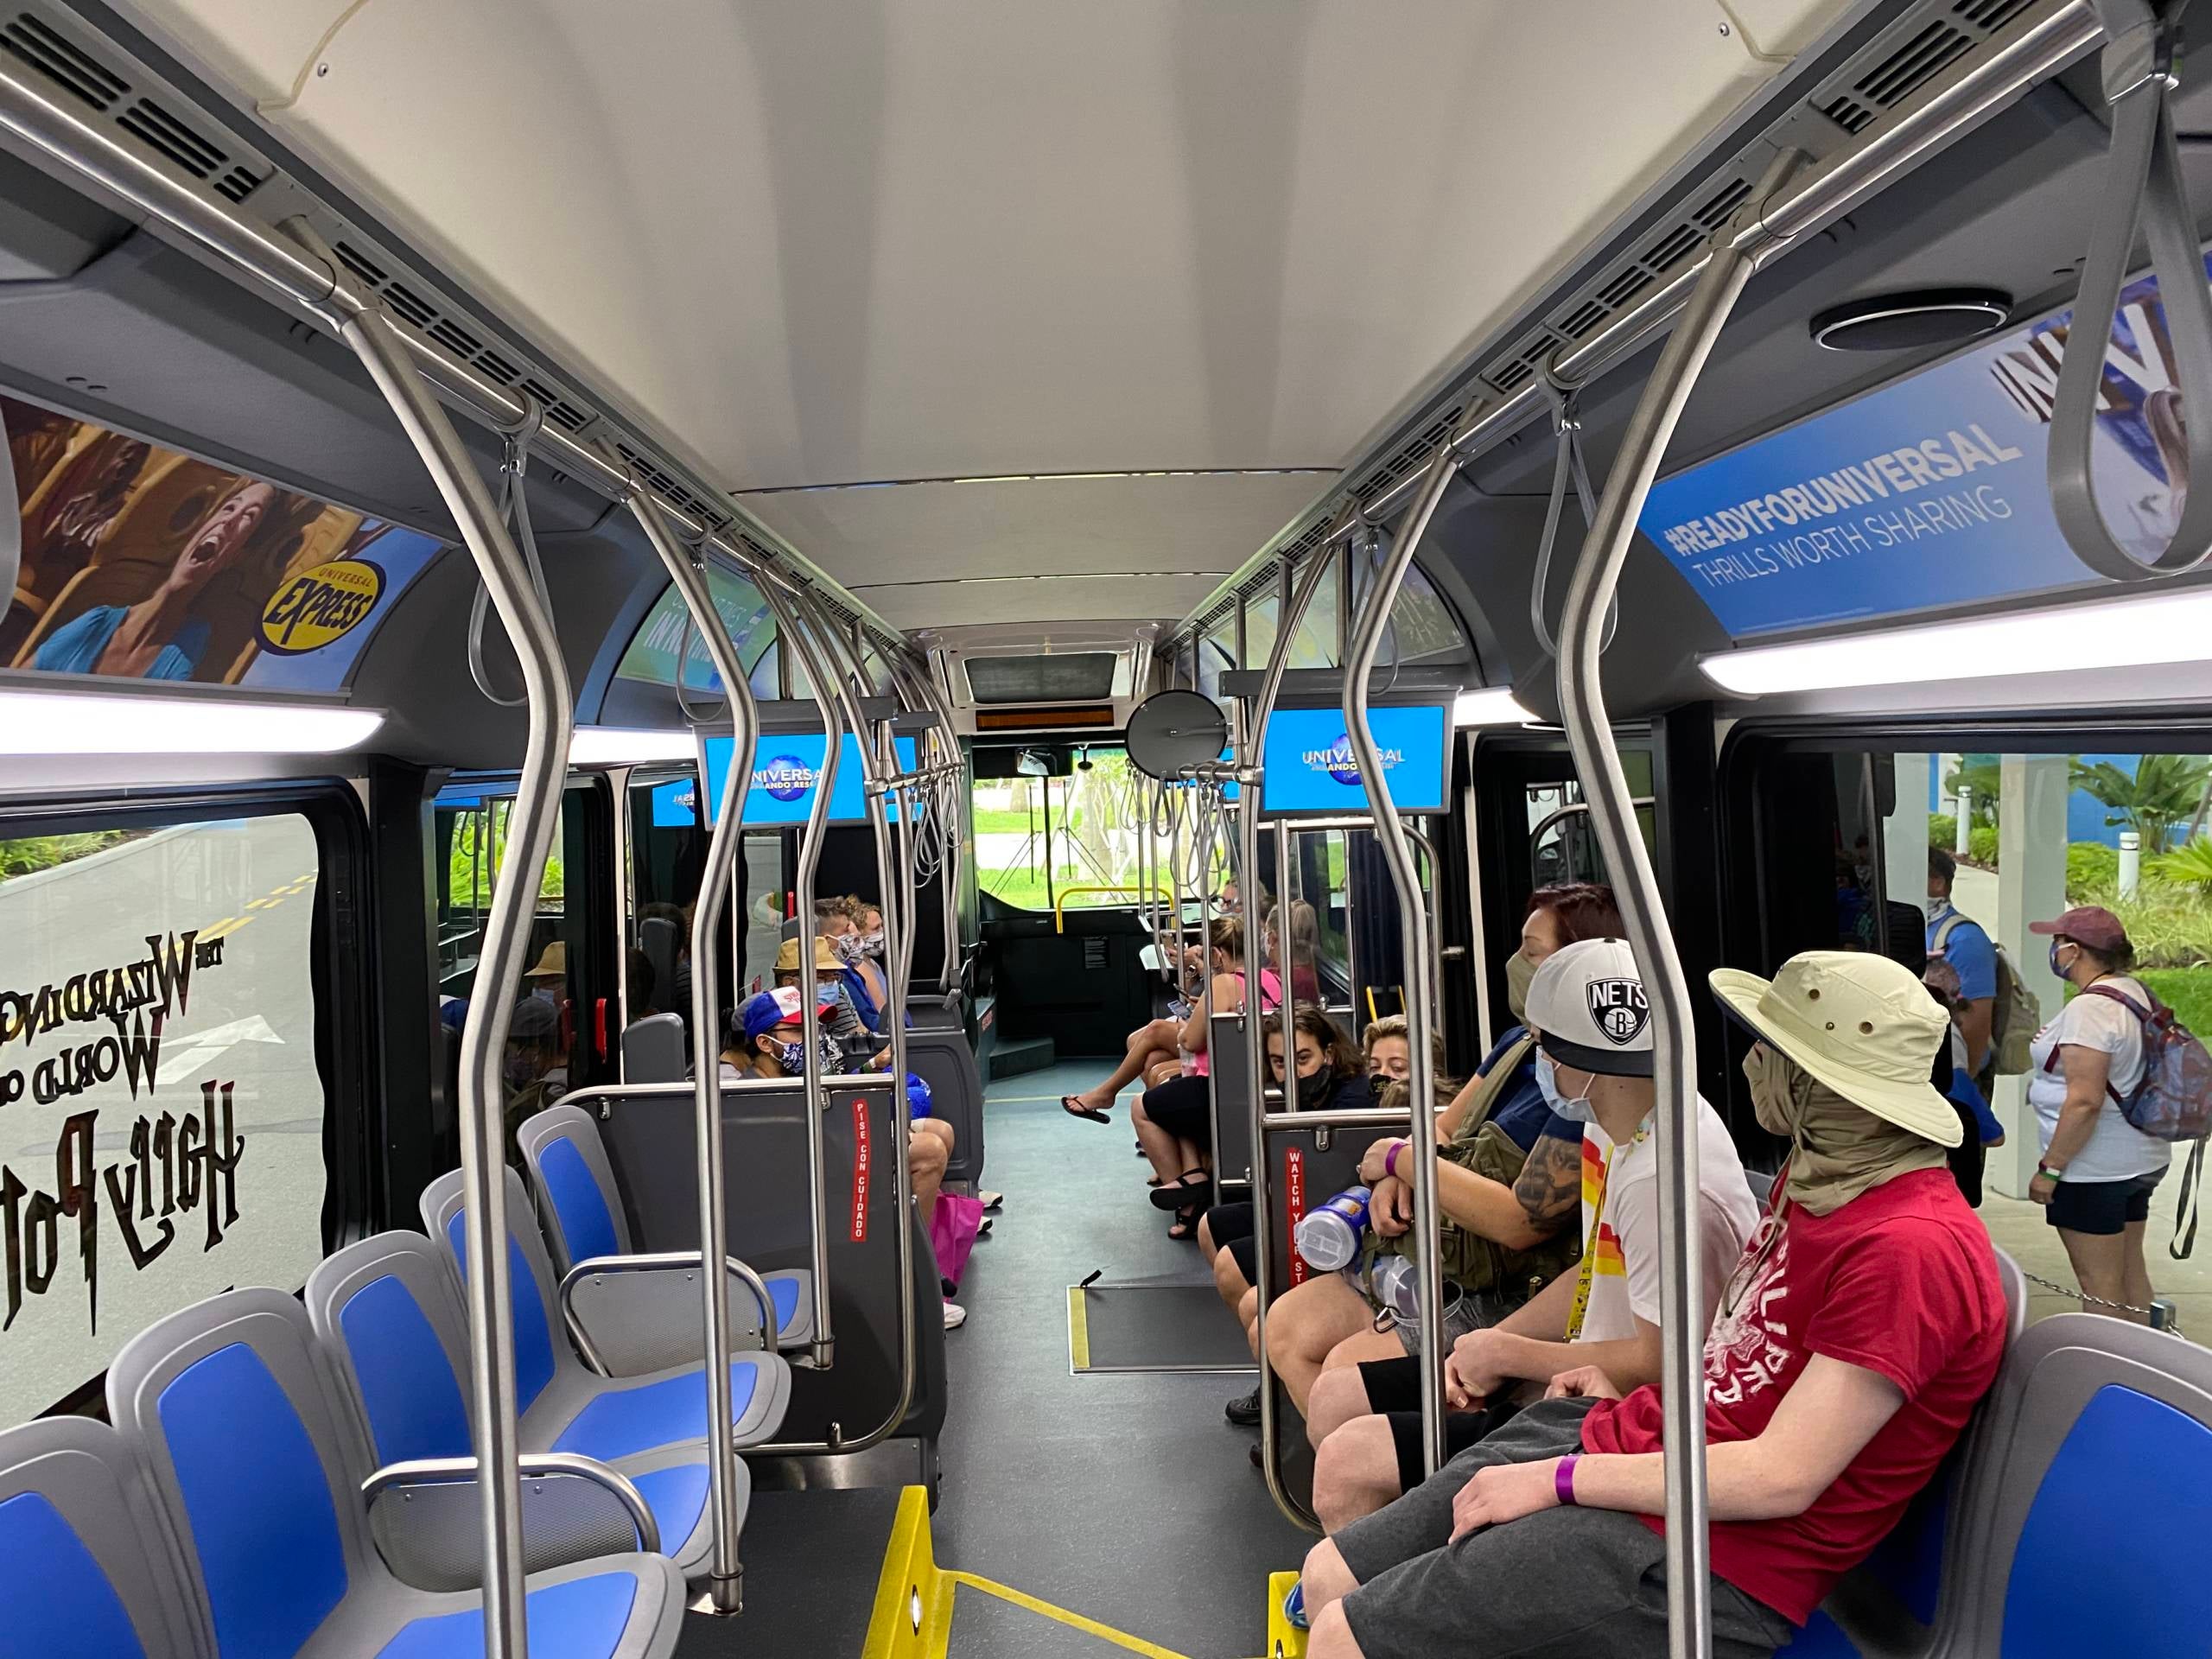 Cómo llegar a  Expo Hall en Orlando en Autobús?